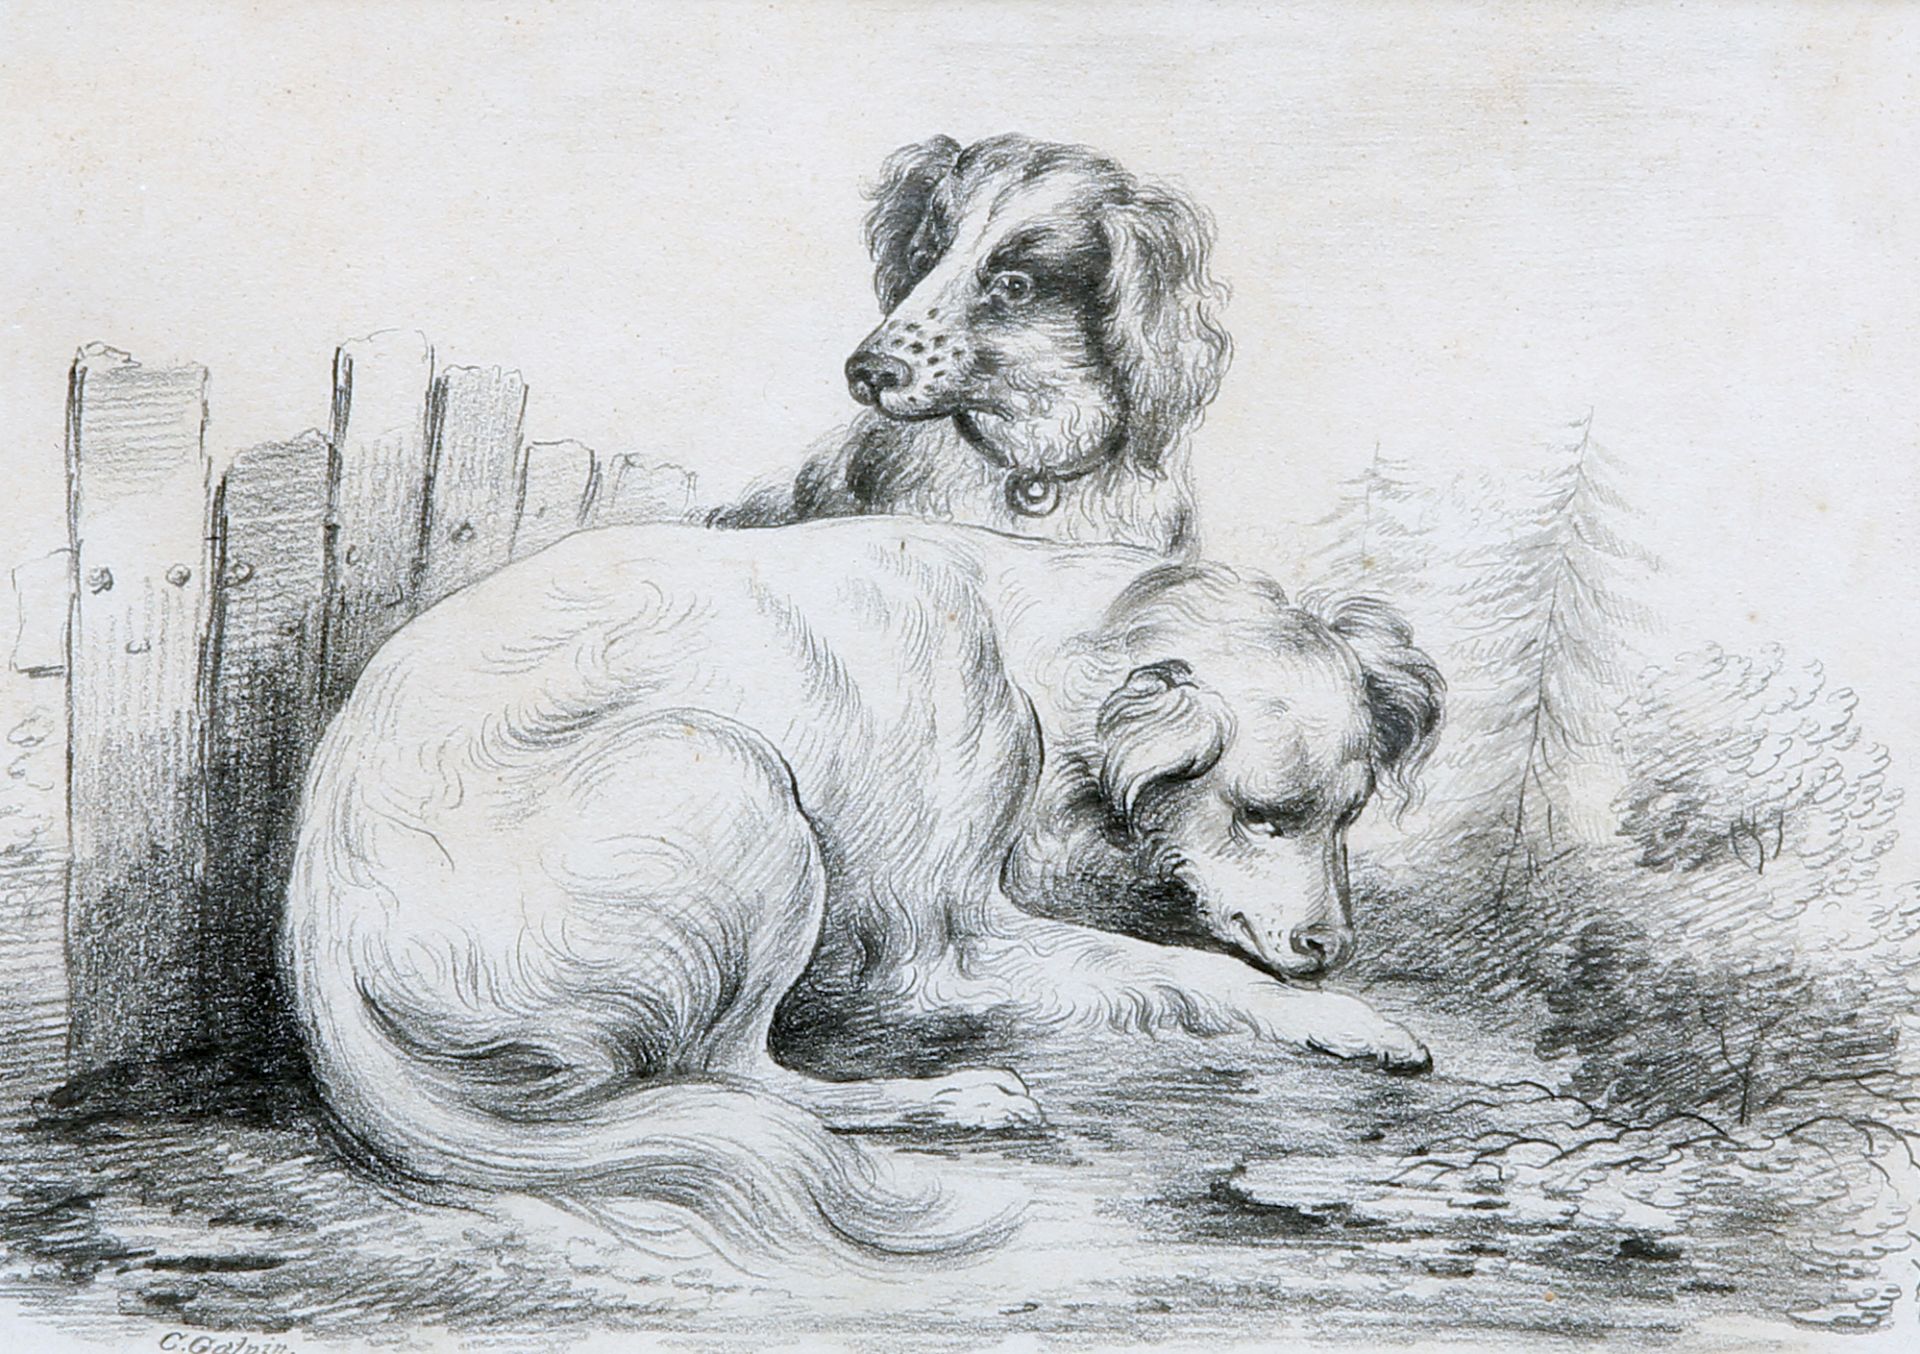 C*** GALPIN (19TH CENTURY), DOGS